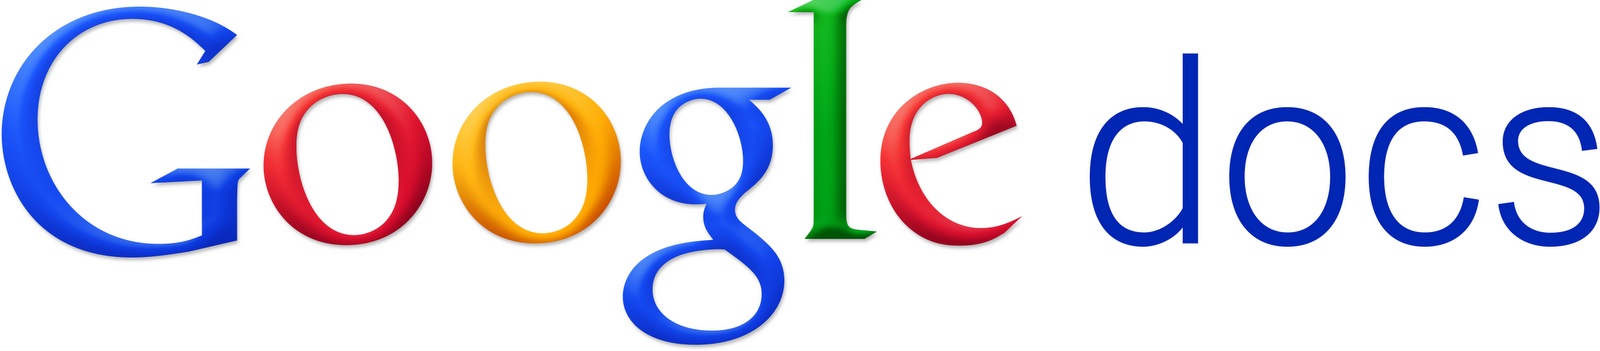 Google Docs  logo